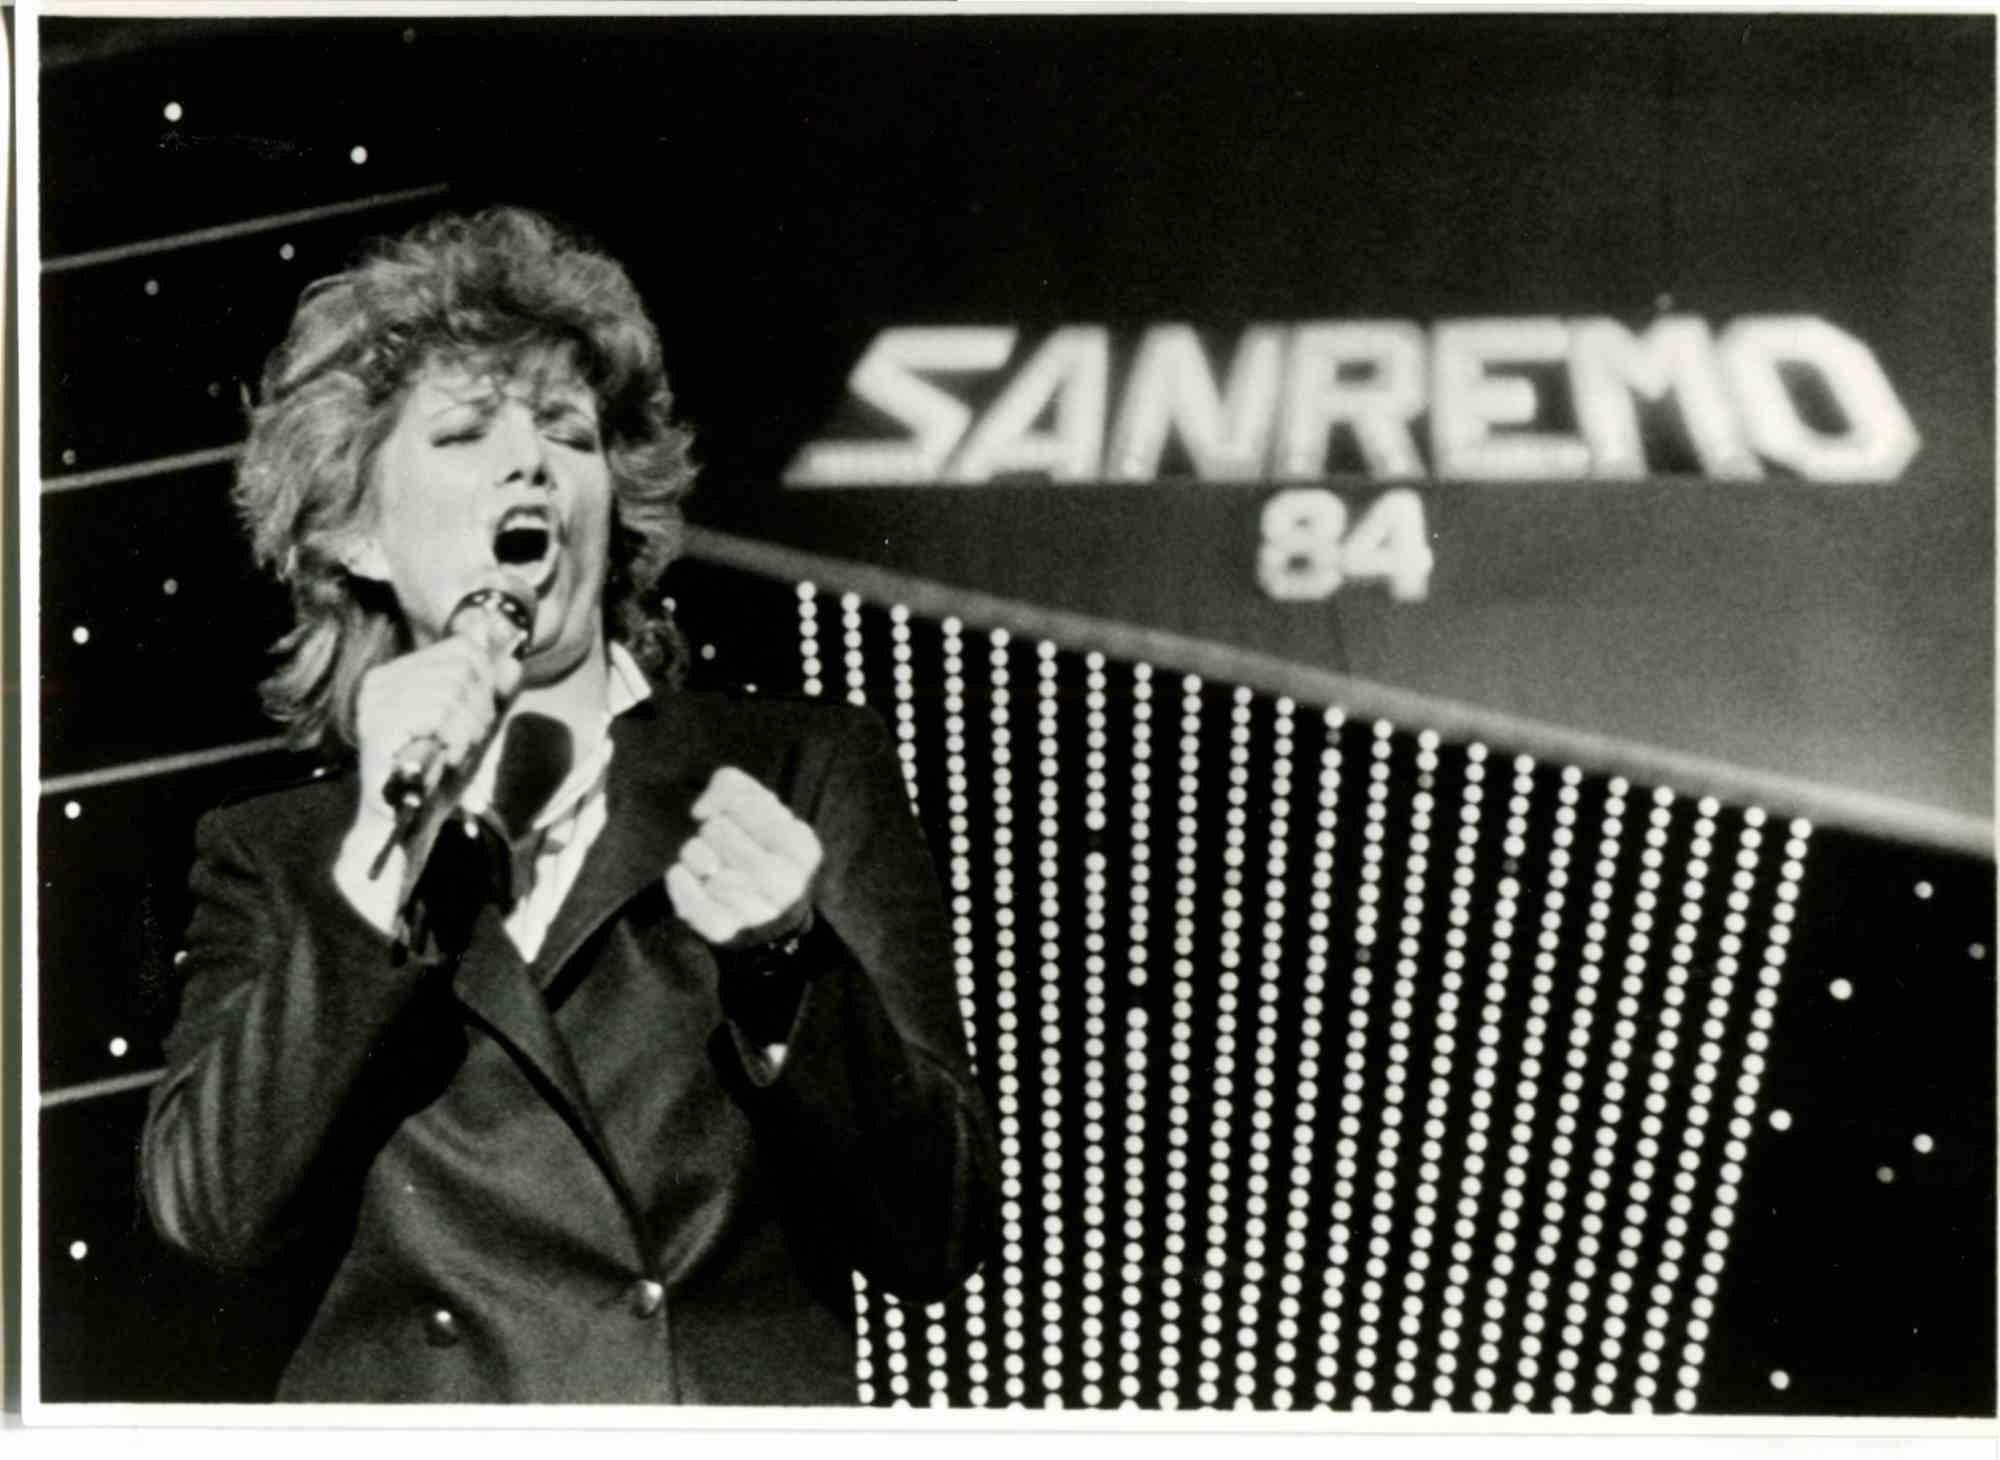  Iva Zanicchi beim Sanremo Festival 84 - Foto- 1980er Jahre